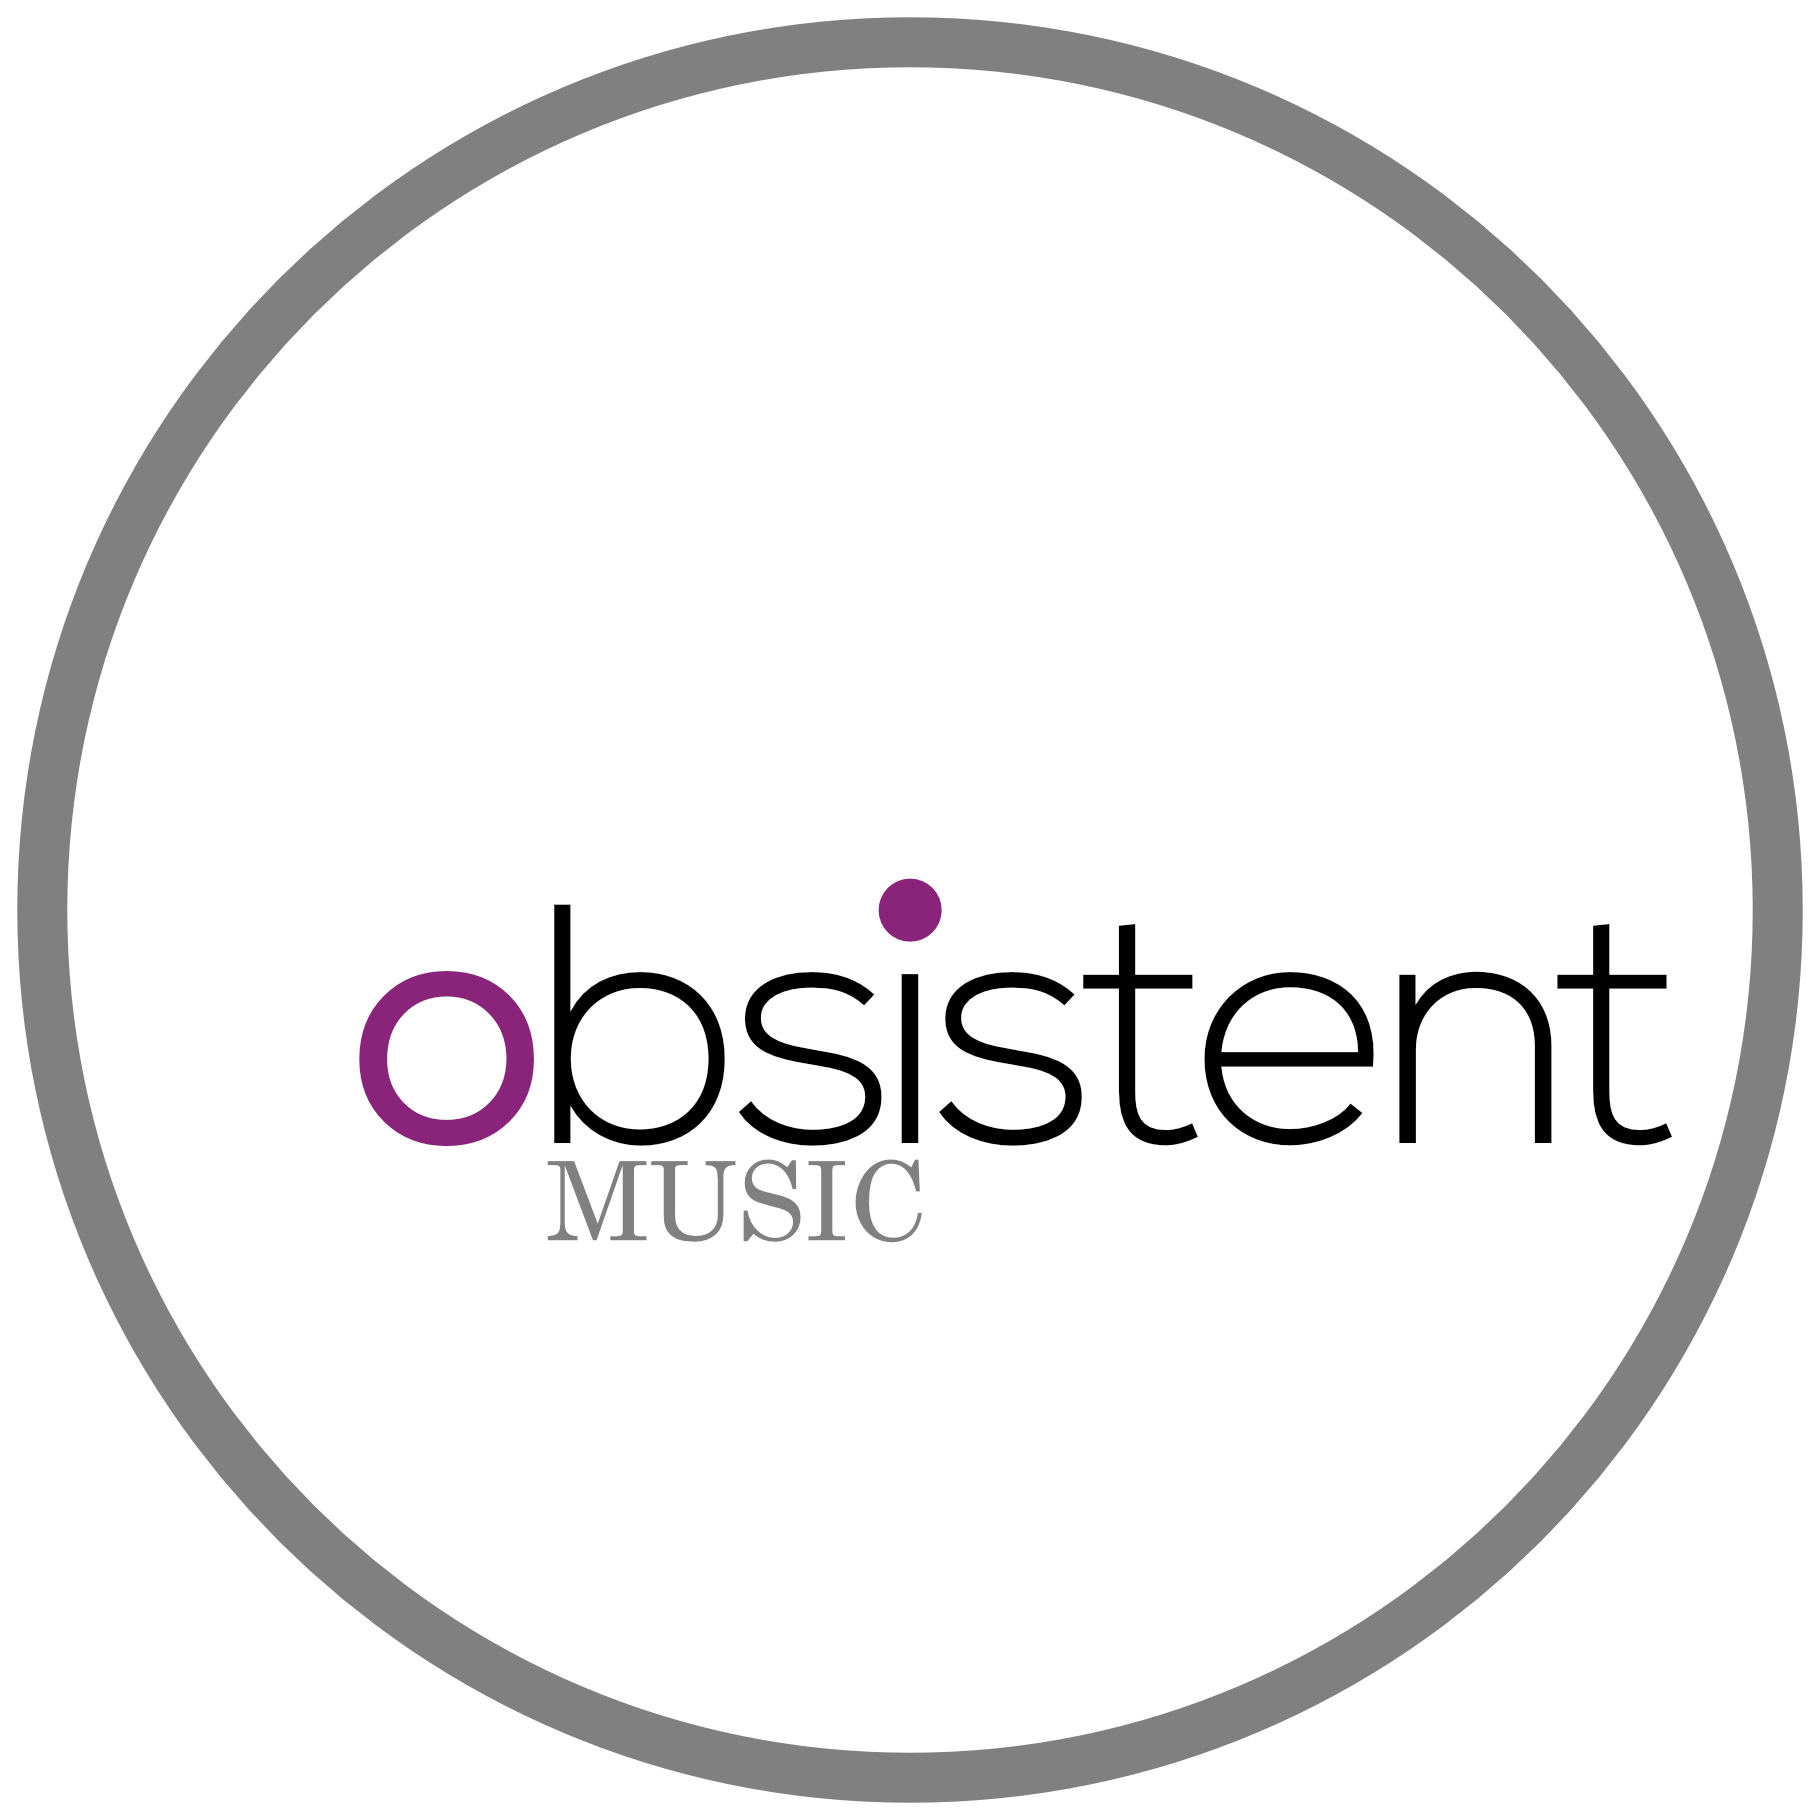 Obsistent Music logo